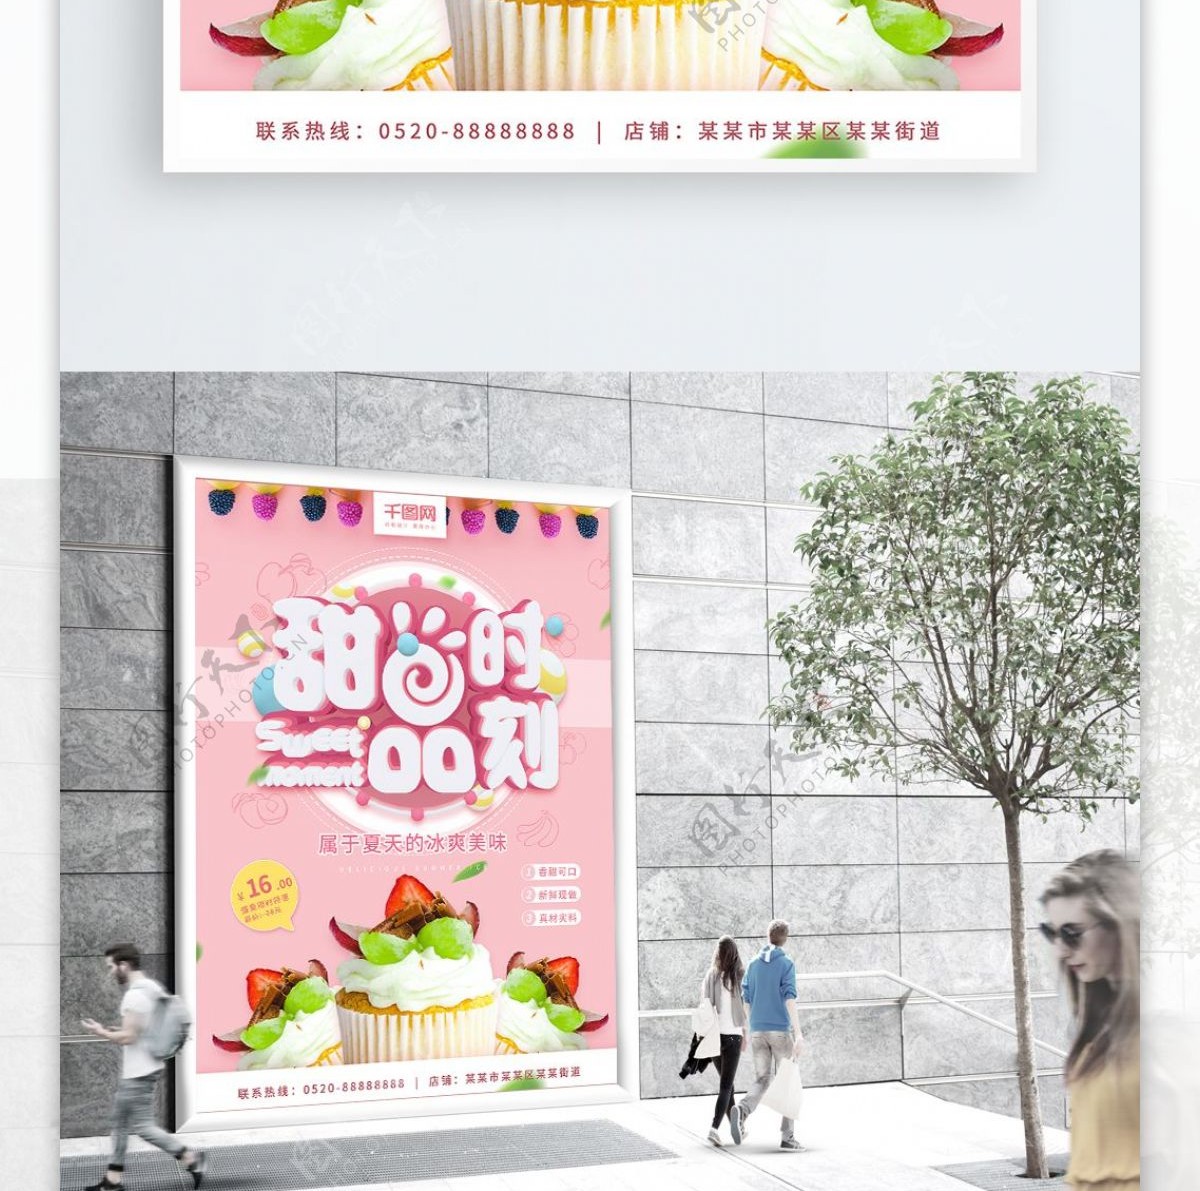 甜品时刻甜品点心粉红色C4D字体商业海报